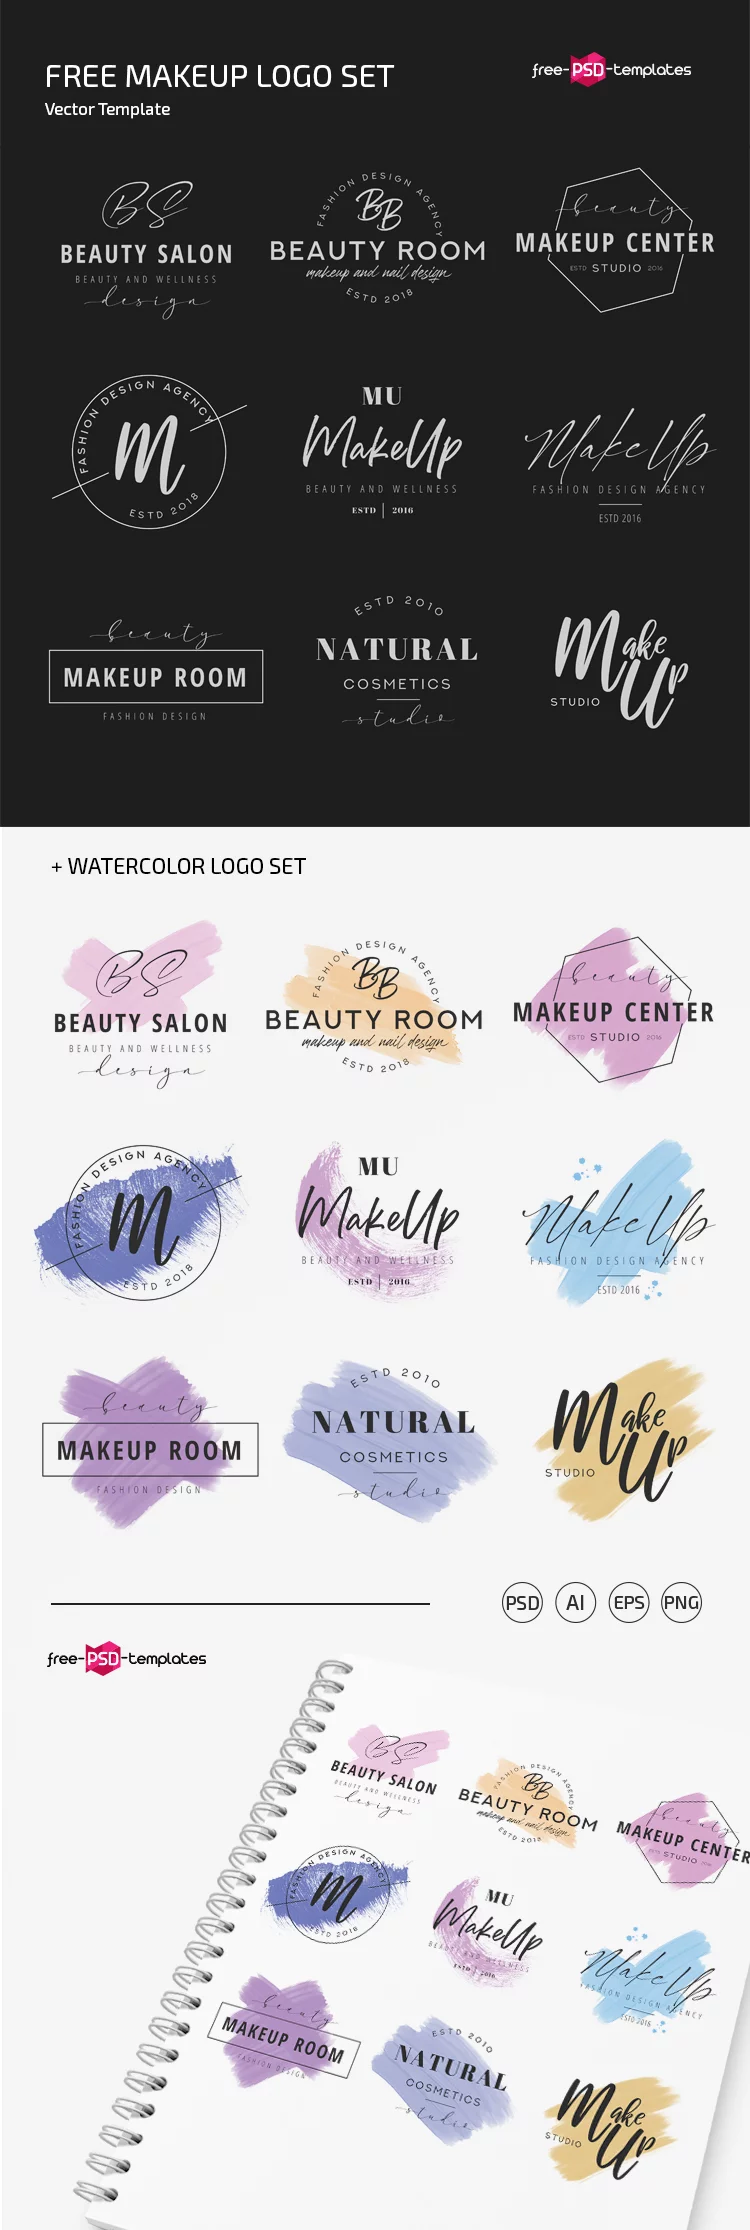 Free MakeUp Logo Templates in PSD + AI